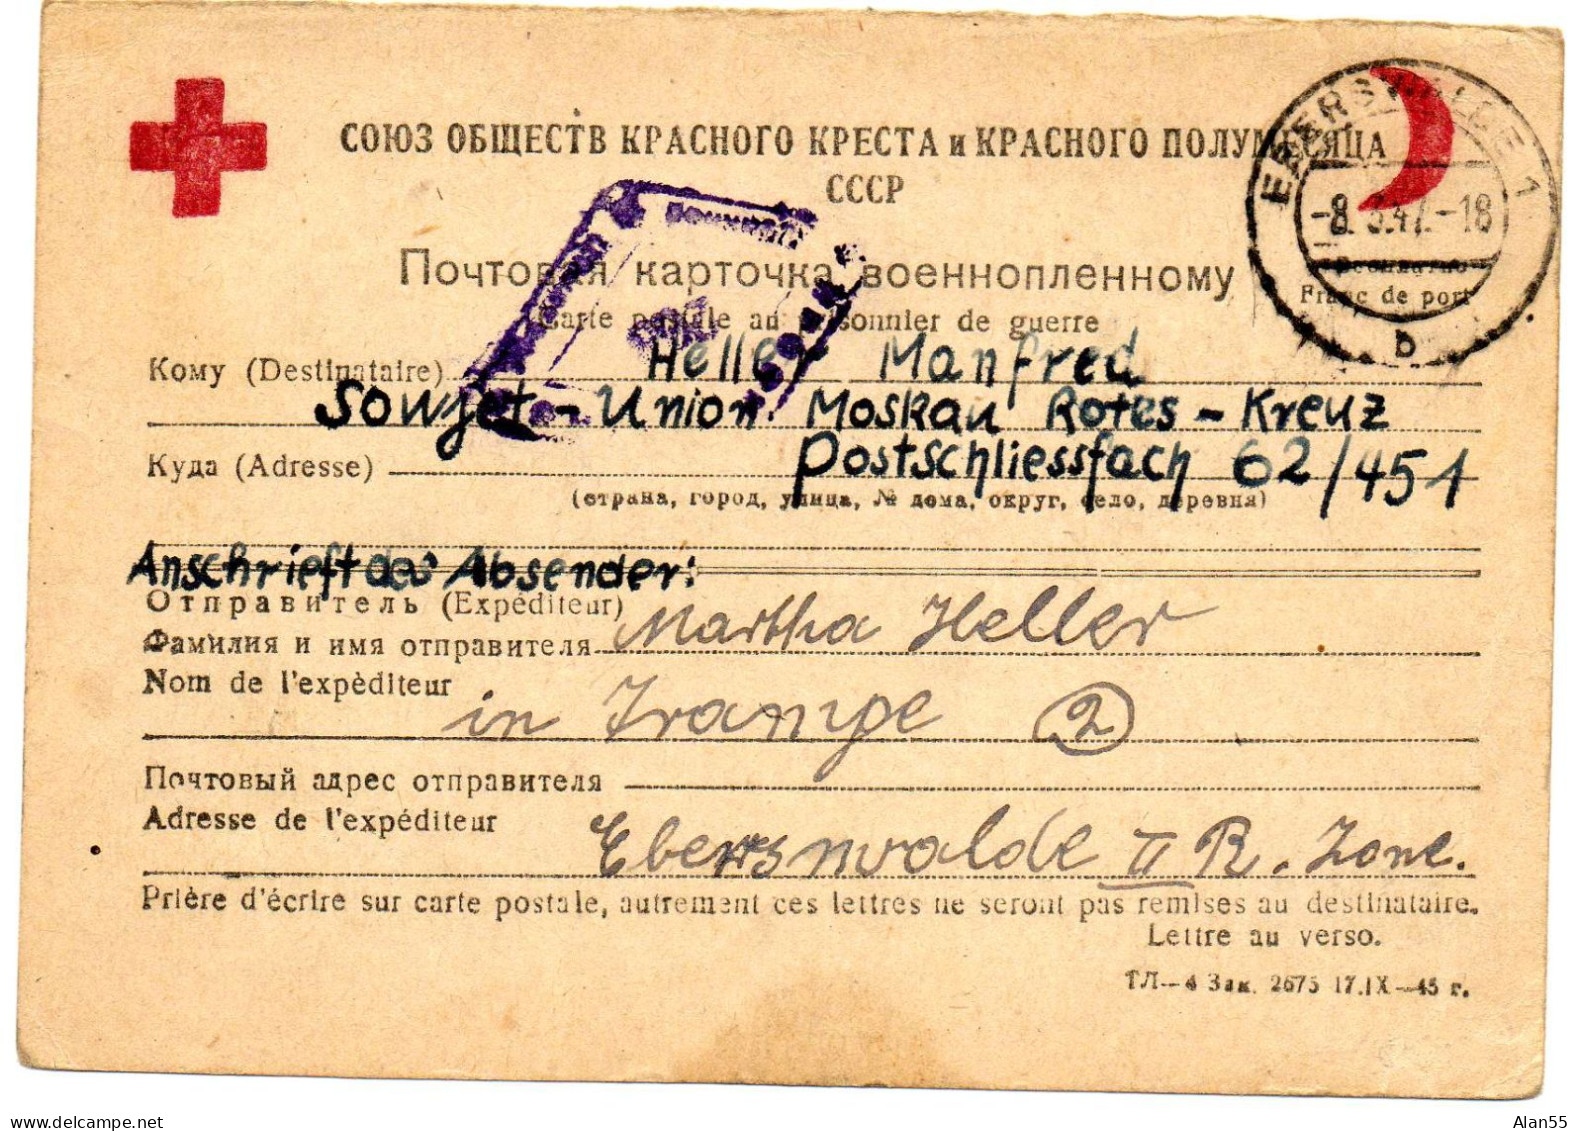 URSS. 1947. CARTE FAMILIALE CROIX-ROUGE. (SENS ALLEMAGNE-URSS). CENSURE - Lettres & Documents